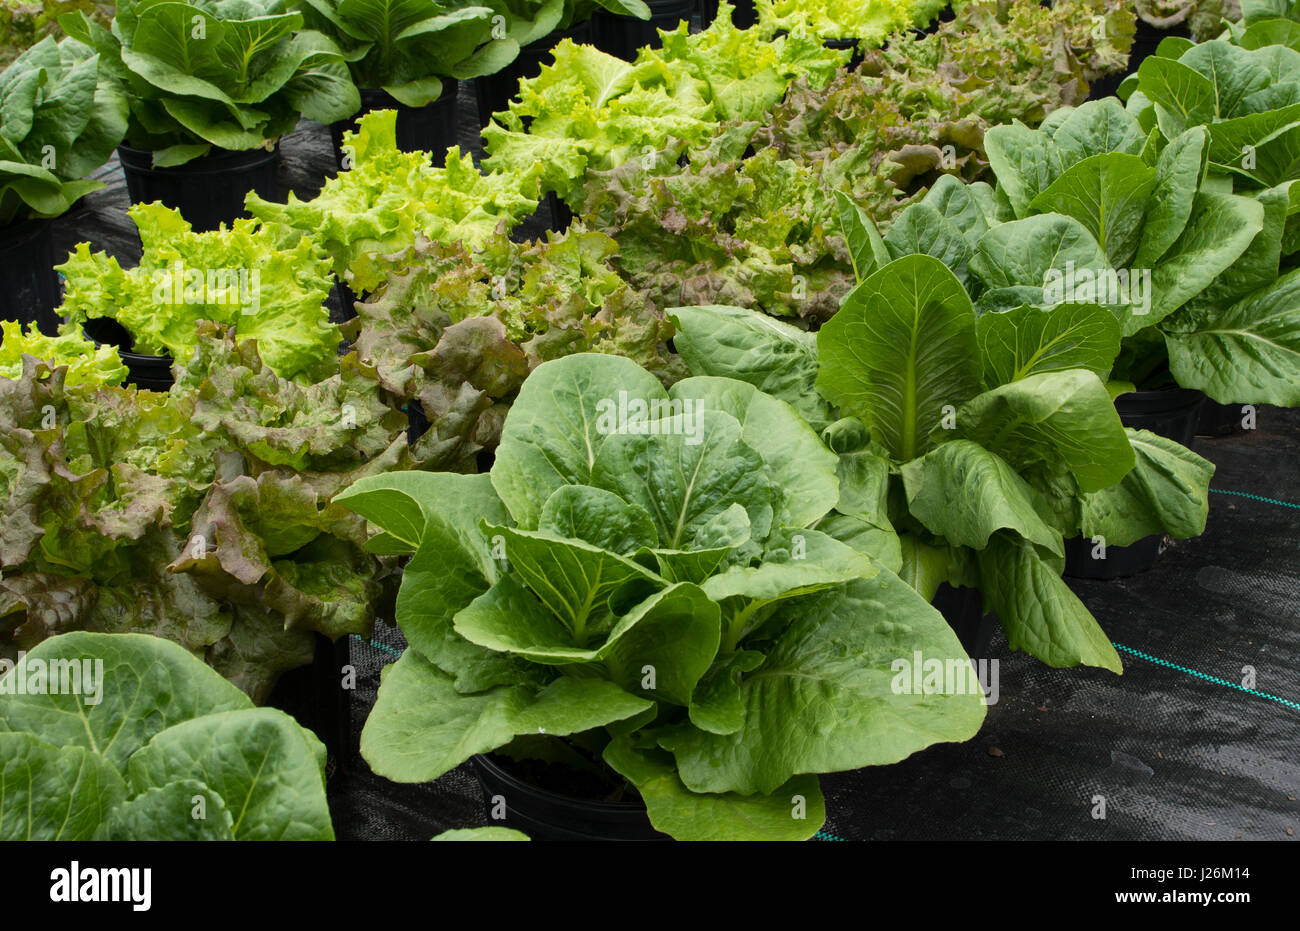 Orgánica de la Florida Central casa jardín con plantas de lechuga y verduras en el patio para comer una dieta sana y cooperativa agraria Foto de stock